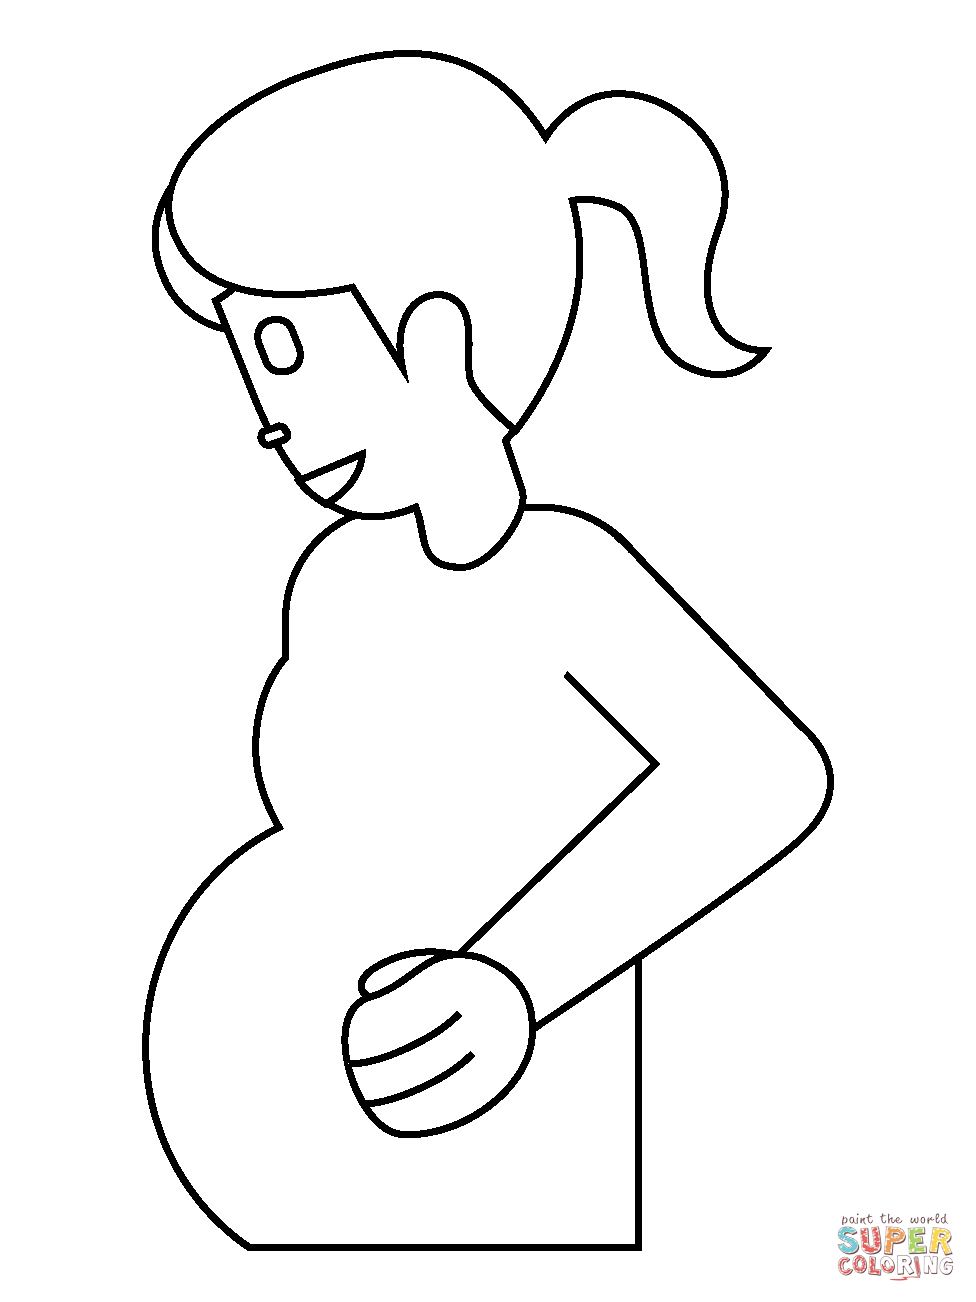 Dibujo de emoji de mujer embarazada para colorear | Dibujos para colorear  imprimir gratis